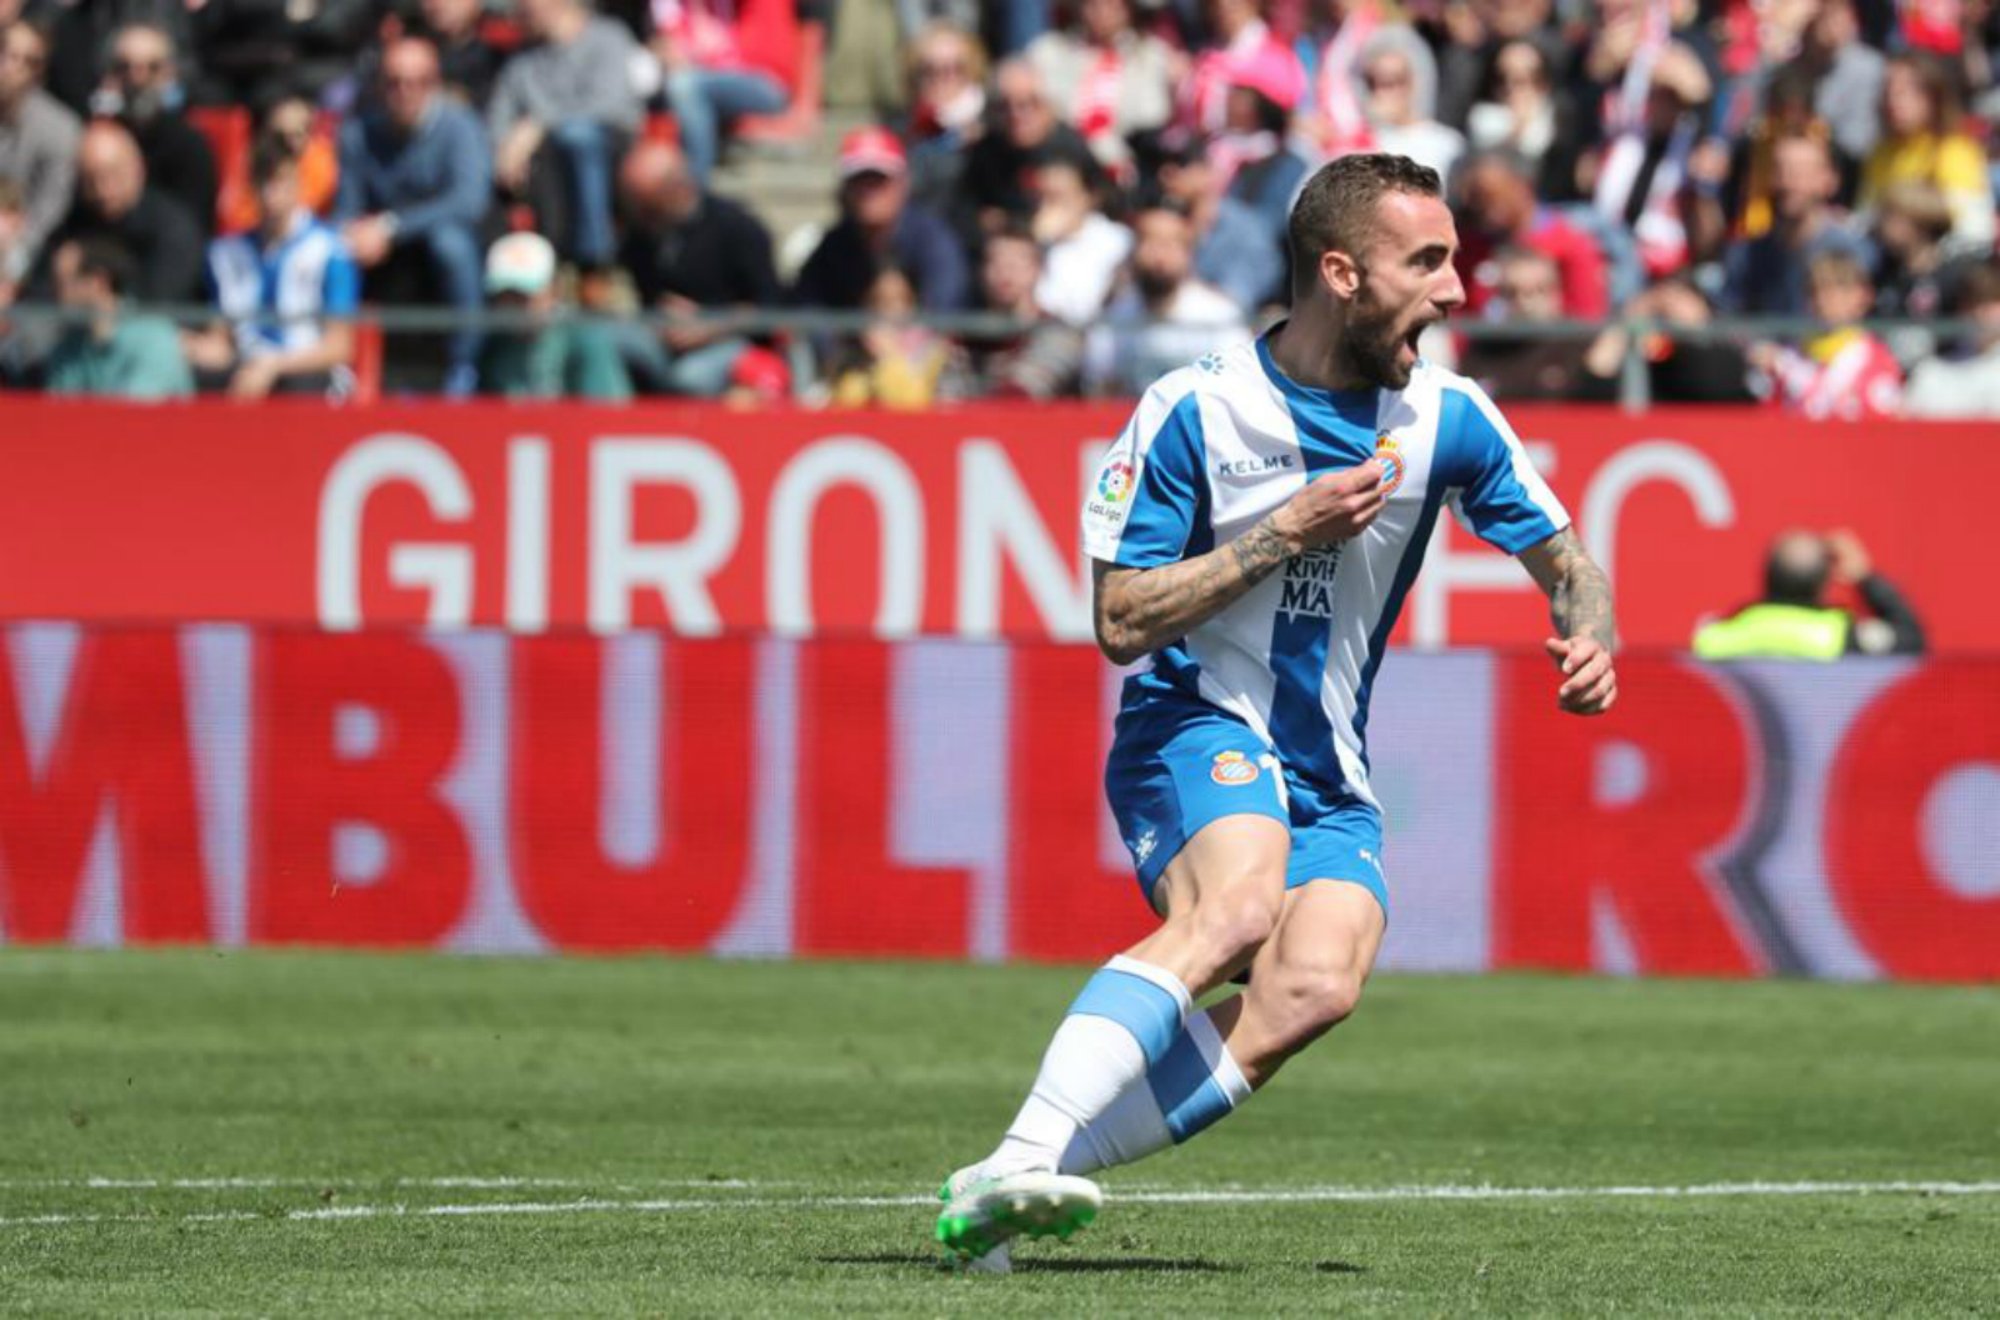 La fortuna y Darder deciden la victoria del Espanyol en Girona (1-2)